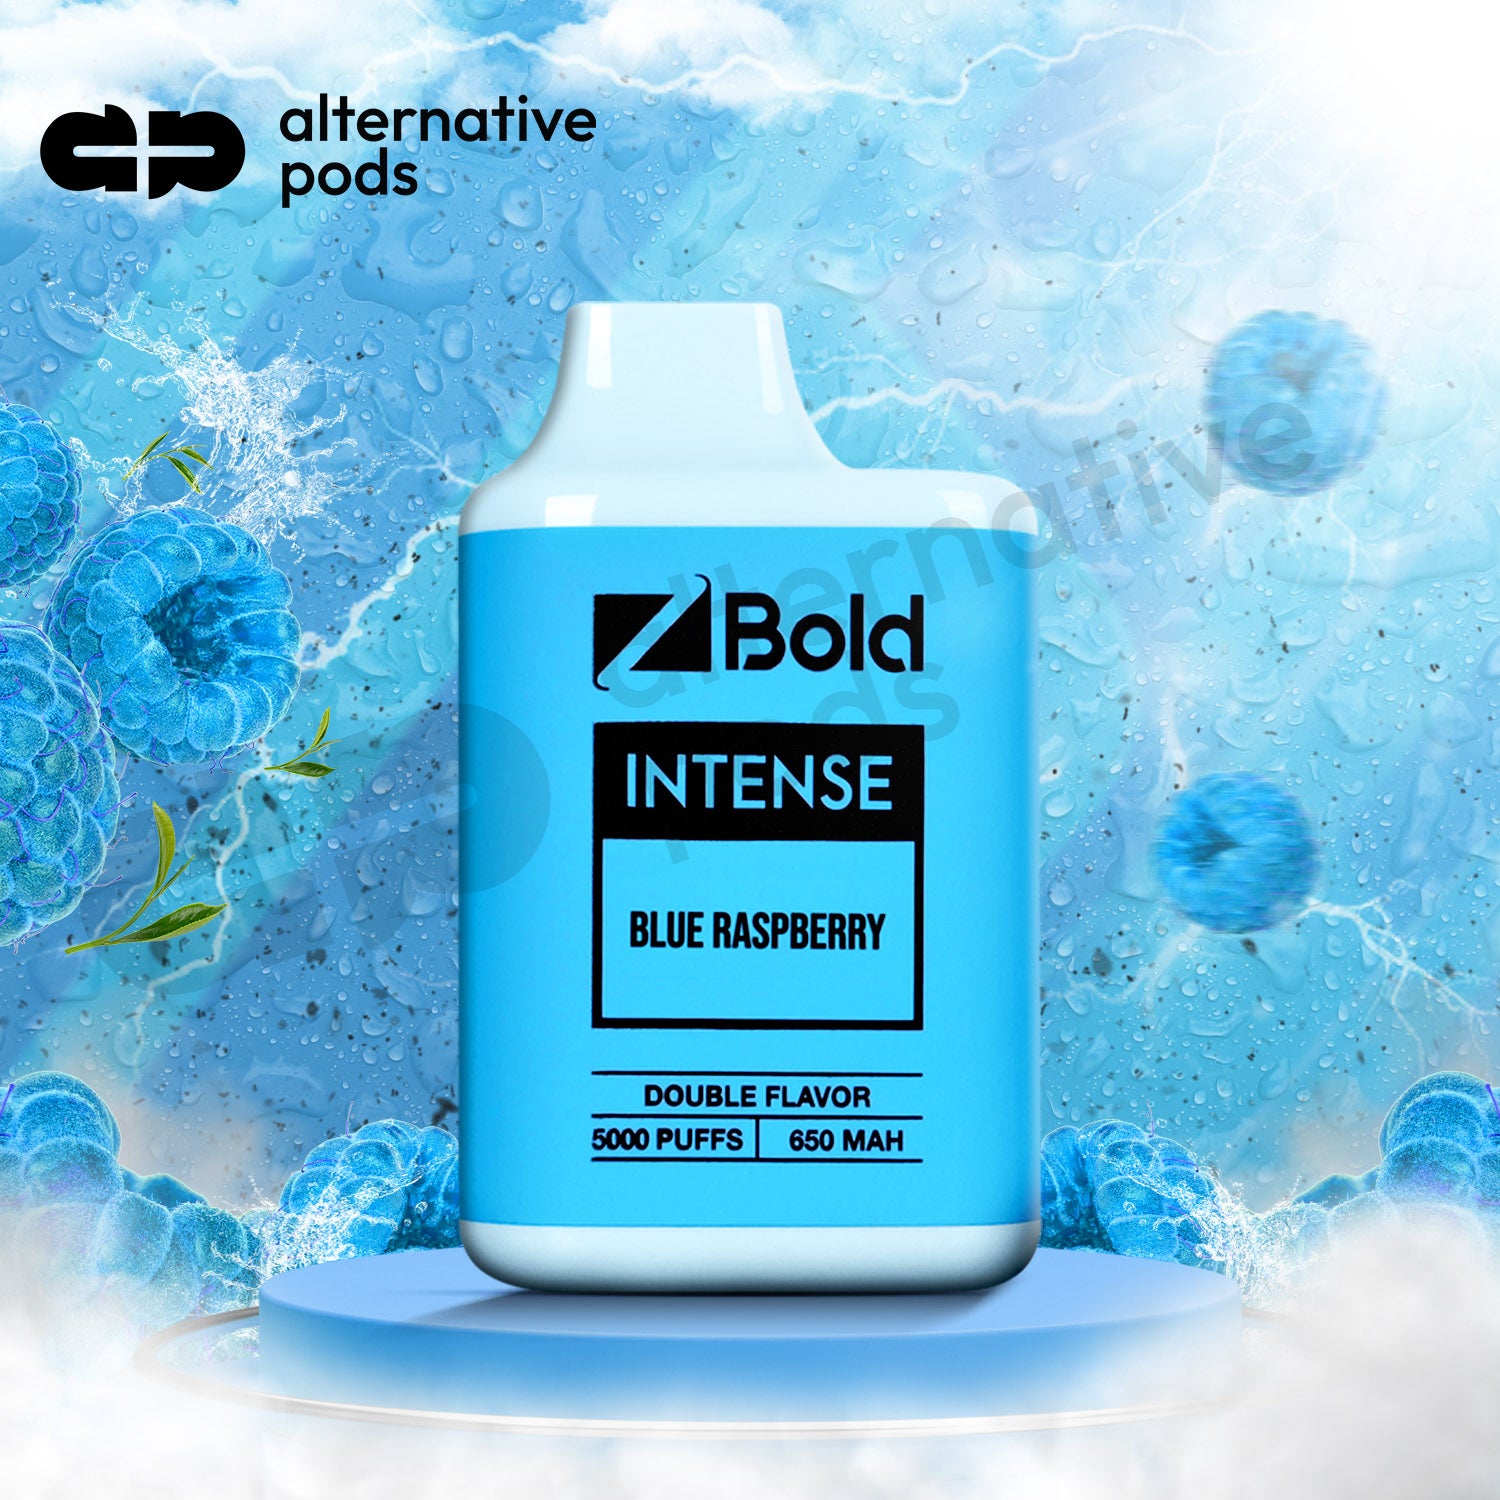 Z Bold Intense 5000 Puff Disposable Vape - Blue Raspberry